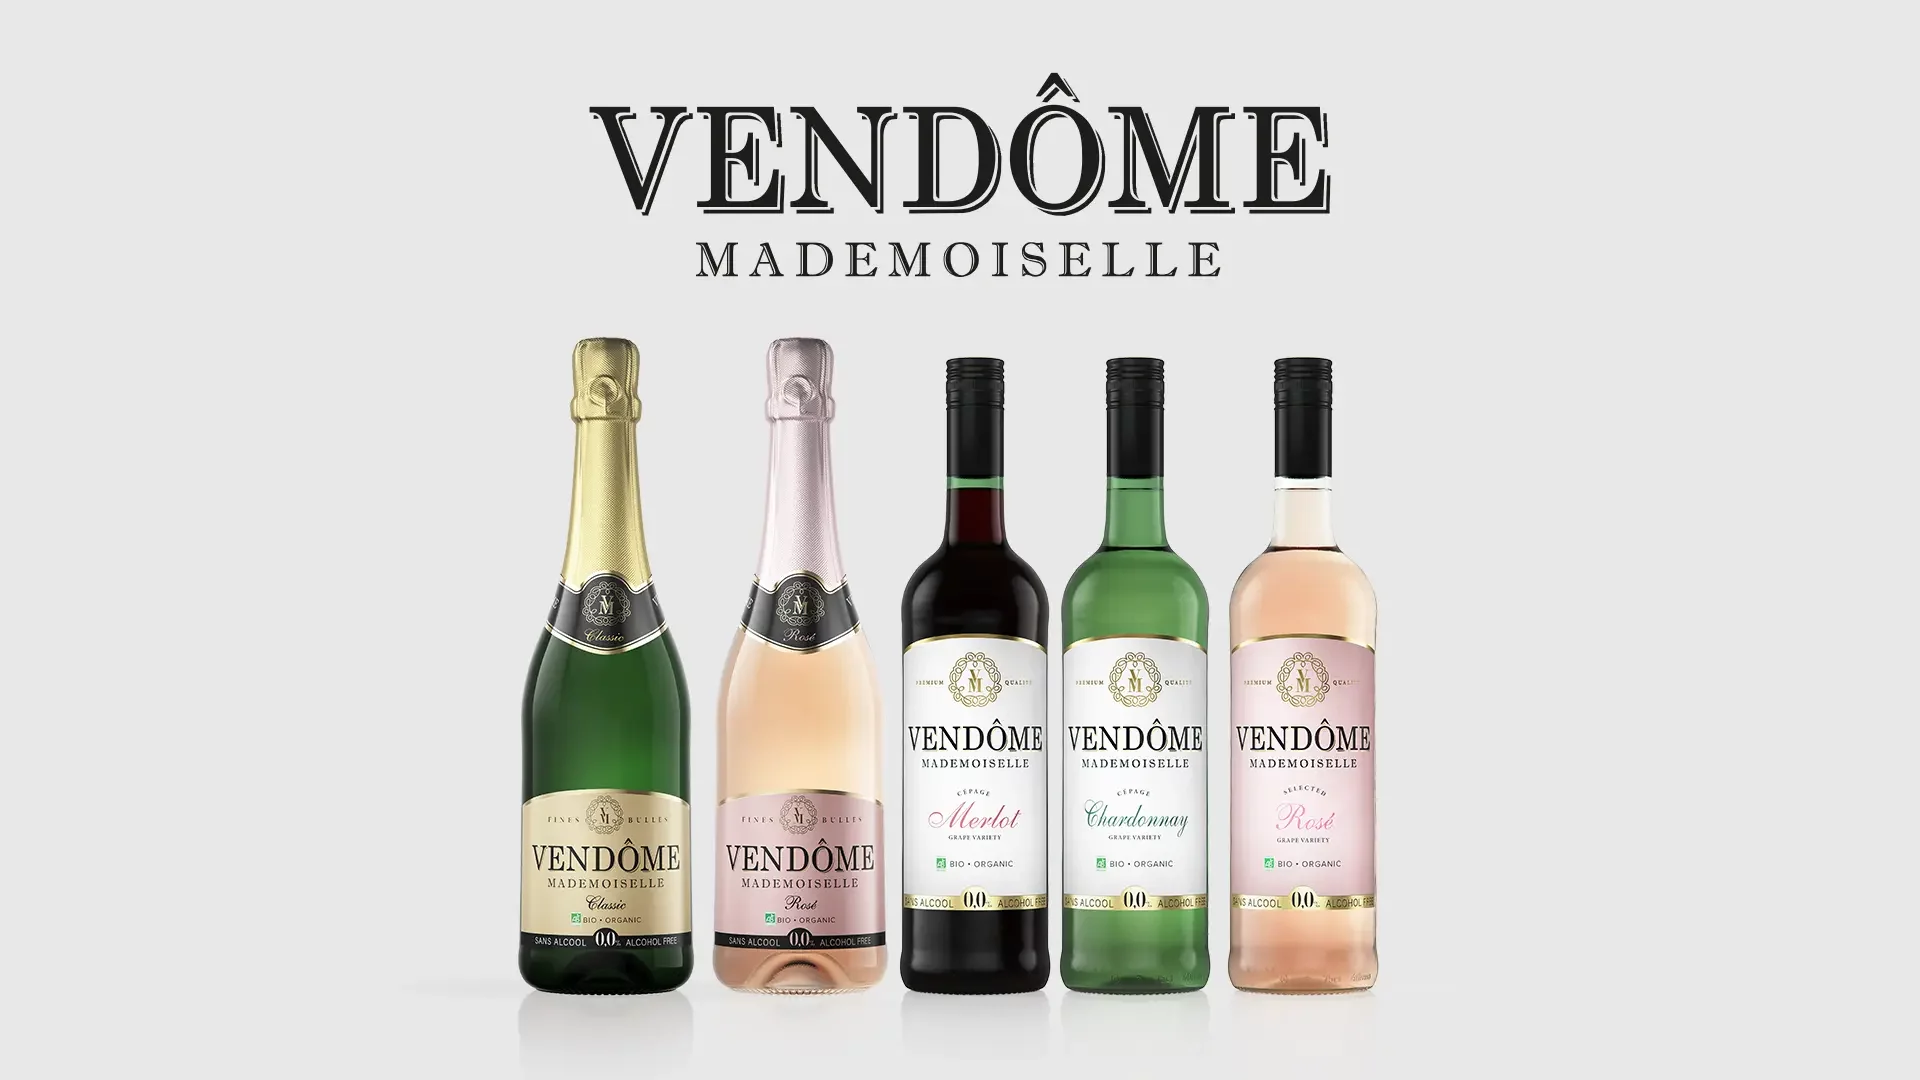 Gamme des vins de la marque Vendôme Mademoiselle sans alcool